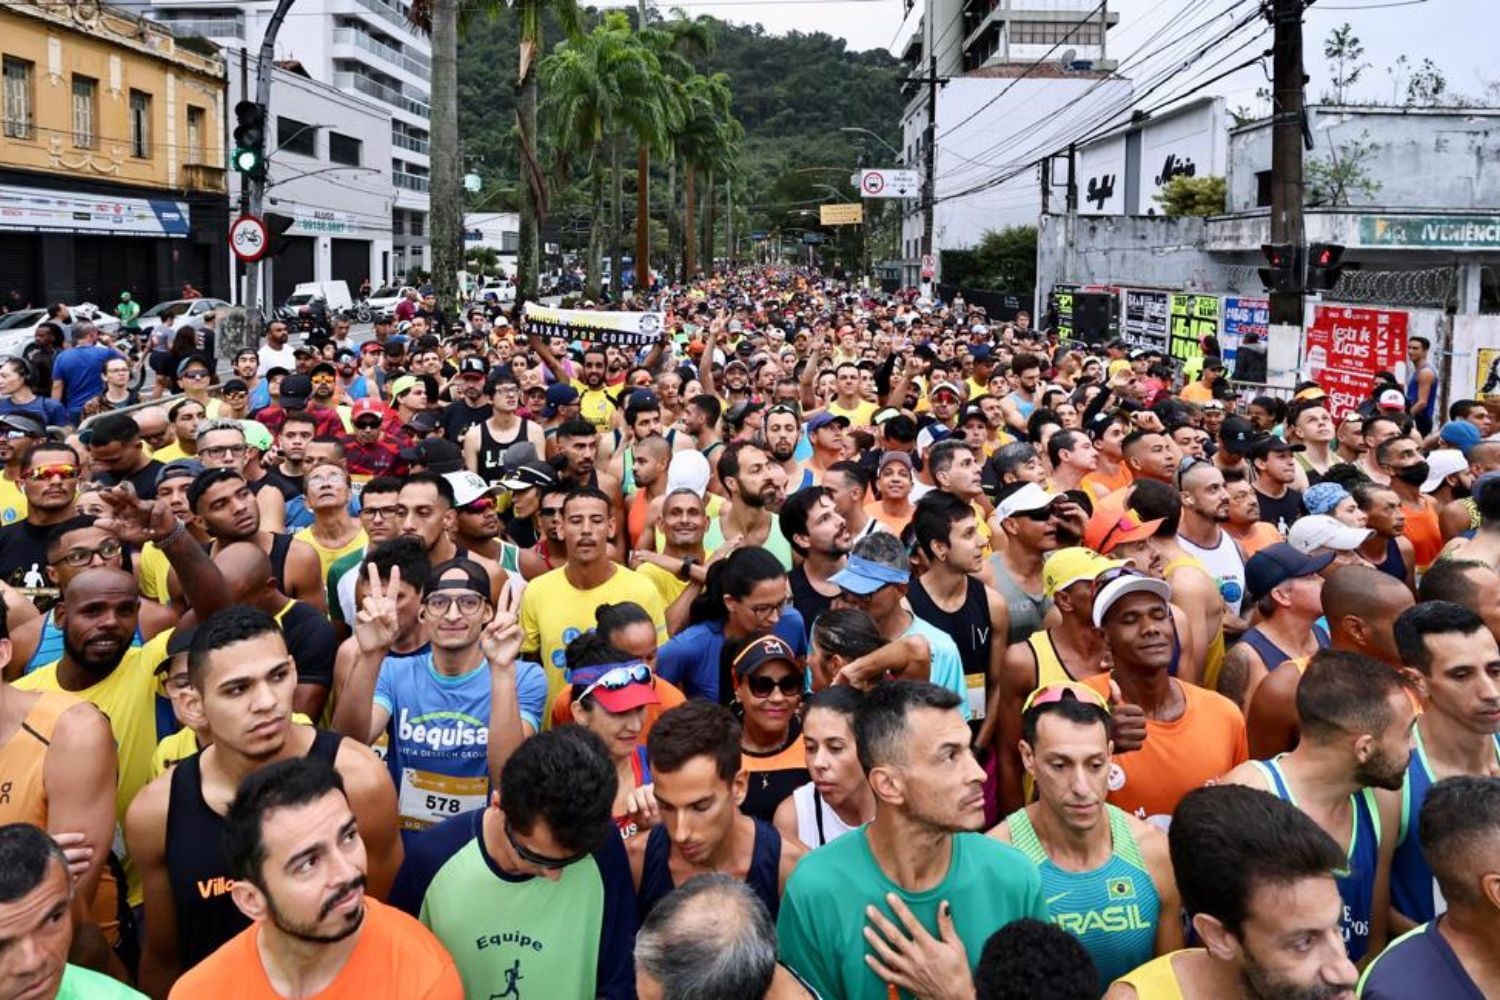 Com novo trajeto, maior prova de 10 km do país reúne 21 mil pessoas em Santos, SP